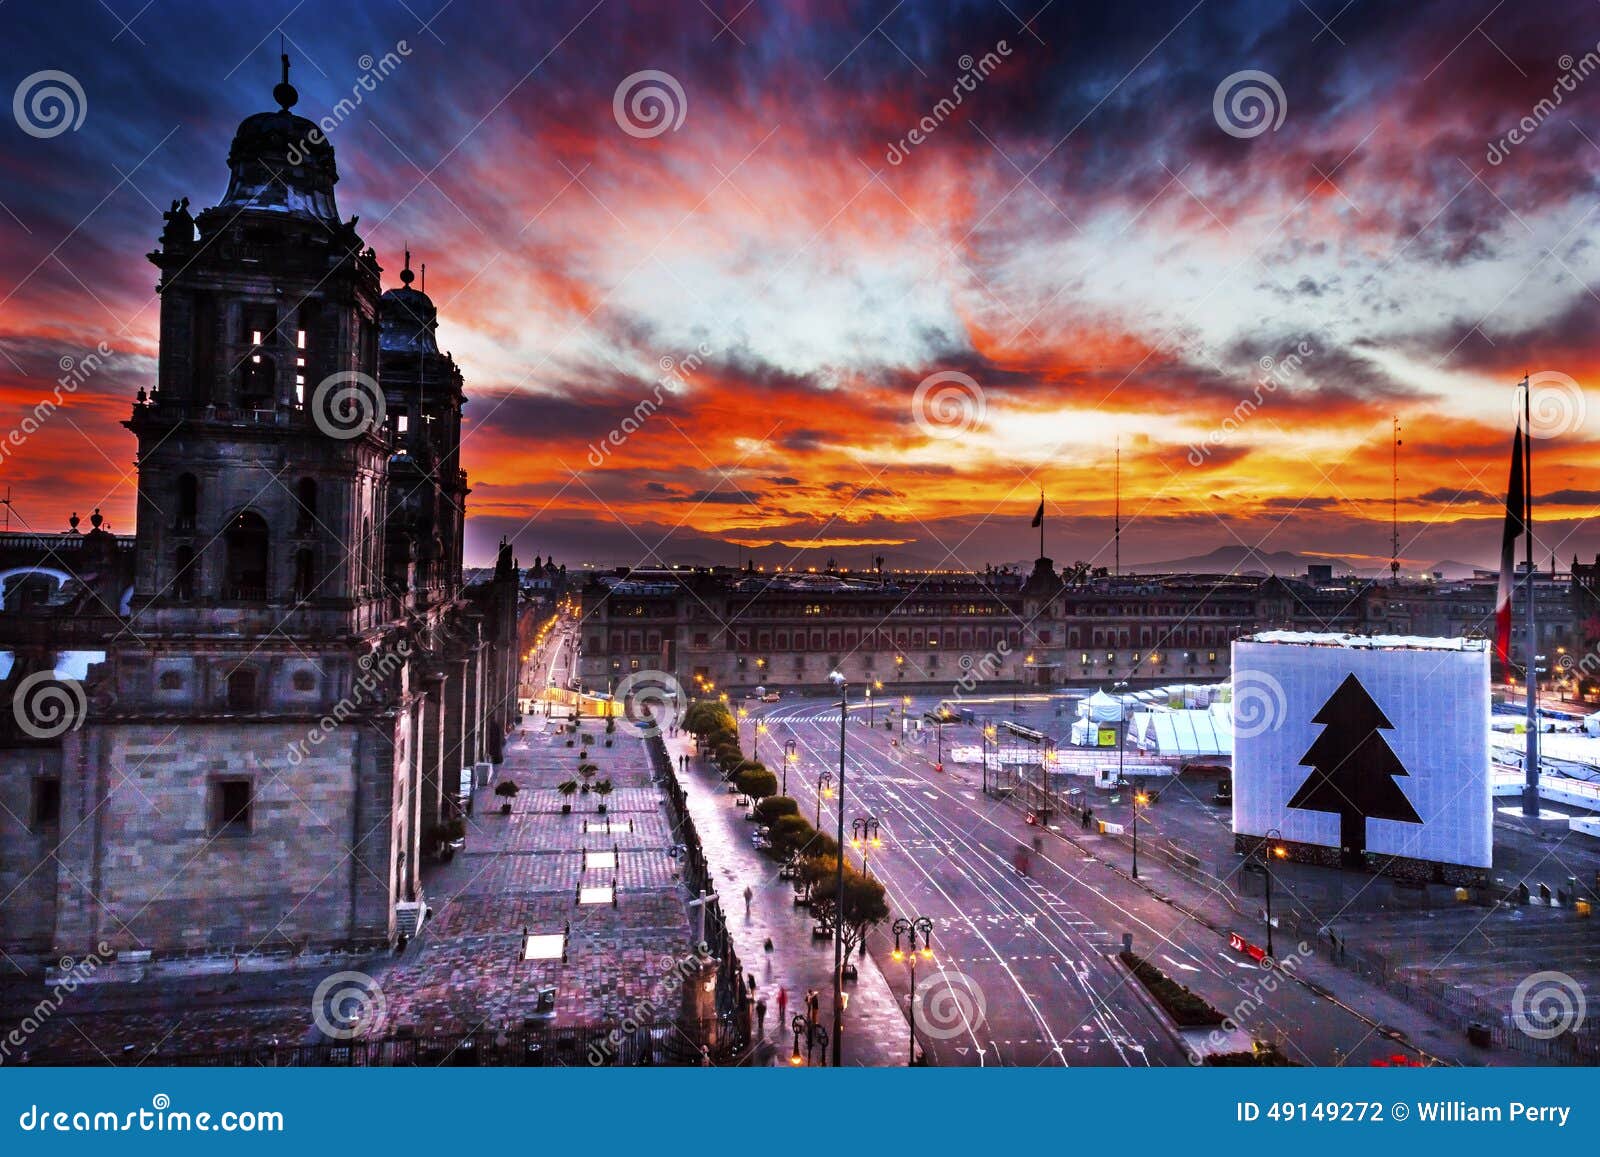 metropolitan cathedral zocalo mexico city mexico sunrise